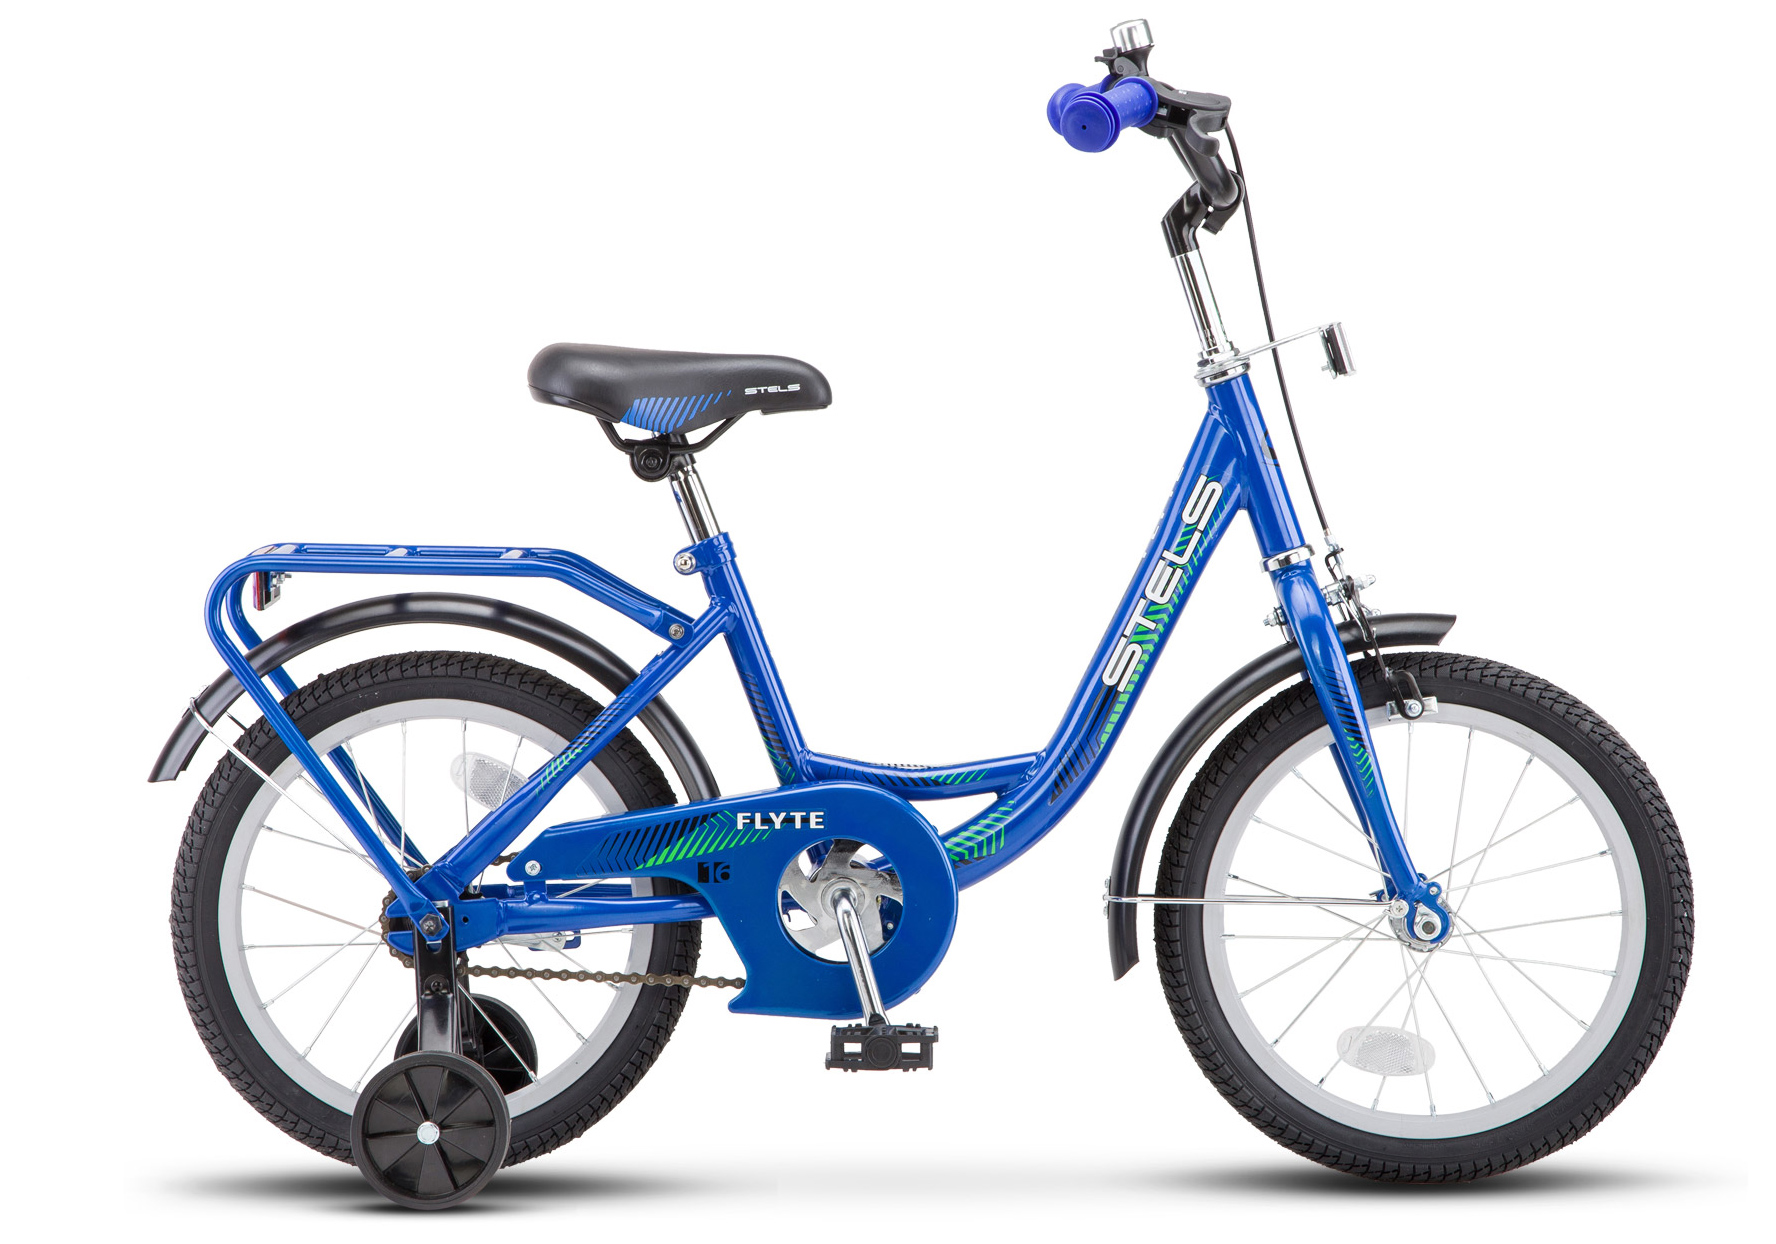  Отзывы о Трехколесный детский велосипед Stels Flyte 16 (Z011) 2019